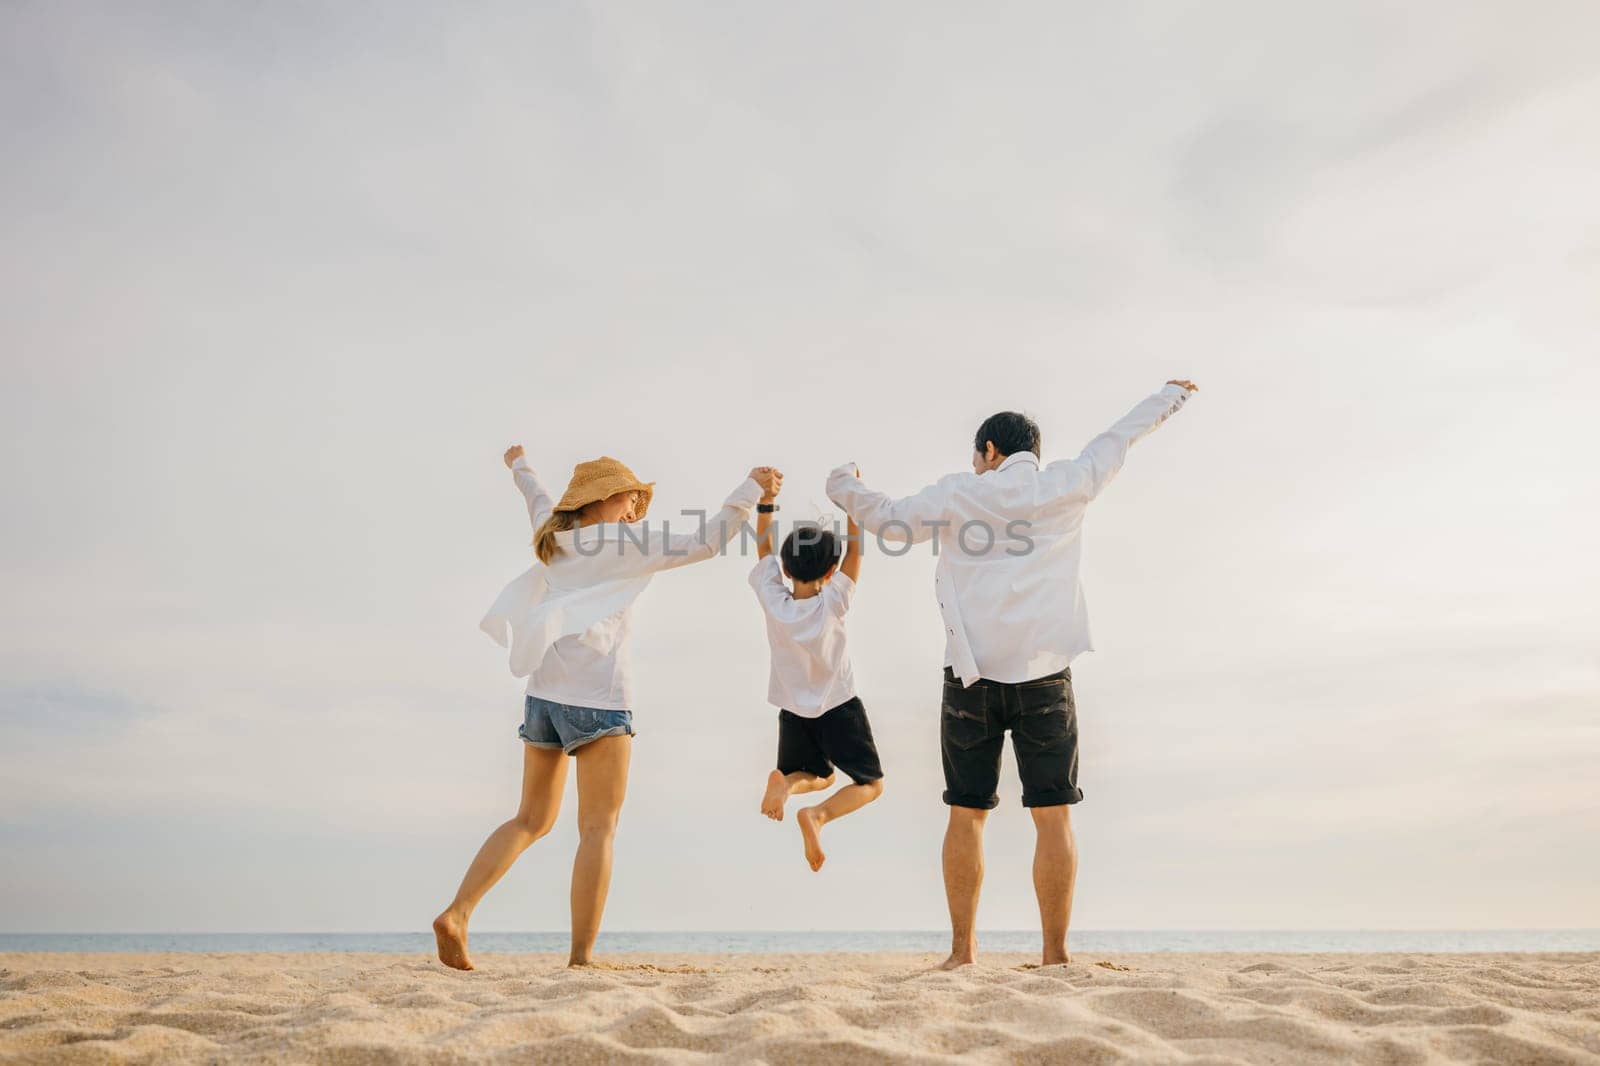 Family outdoor activities by Sorapop